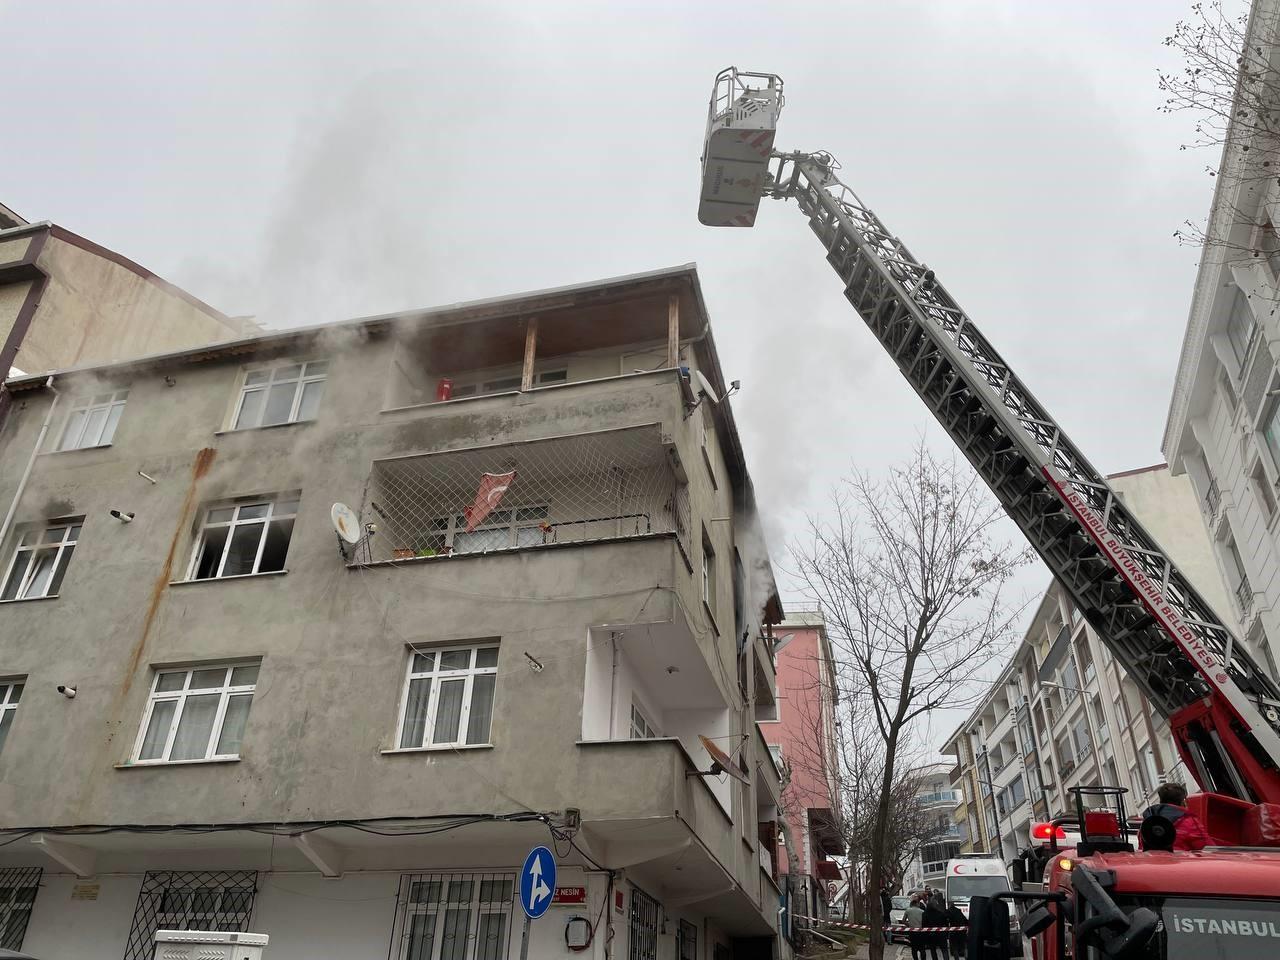 İstanbul'da 4 kişinin mahsur kaldığı yangında korku dolu anlar yaşandı